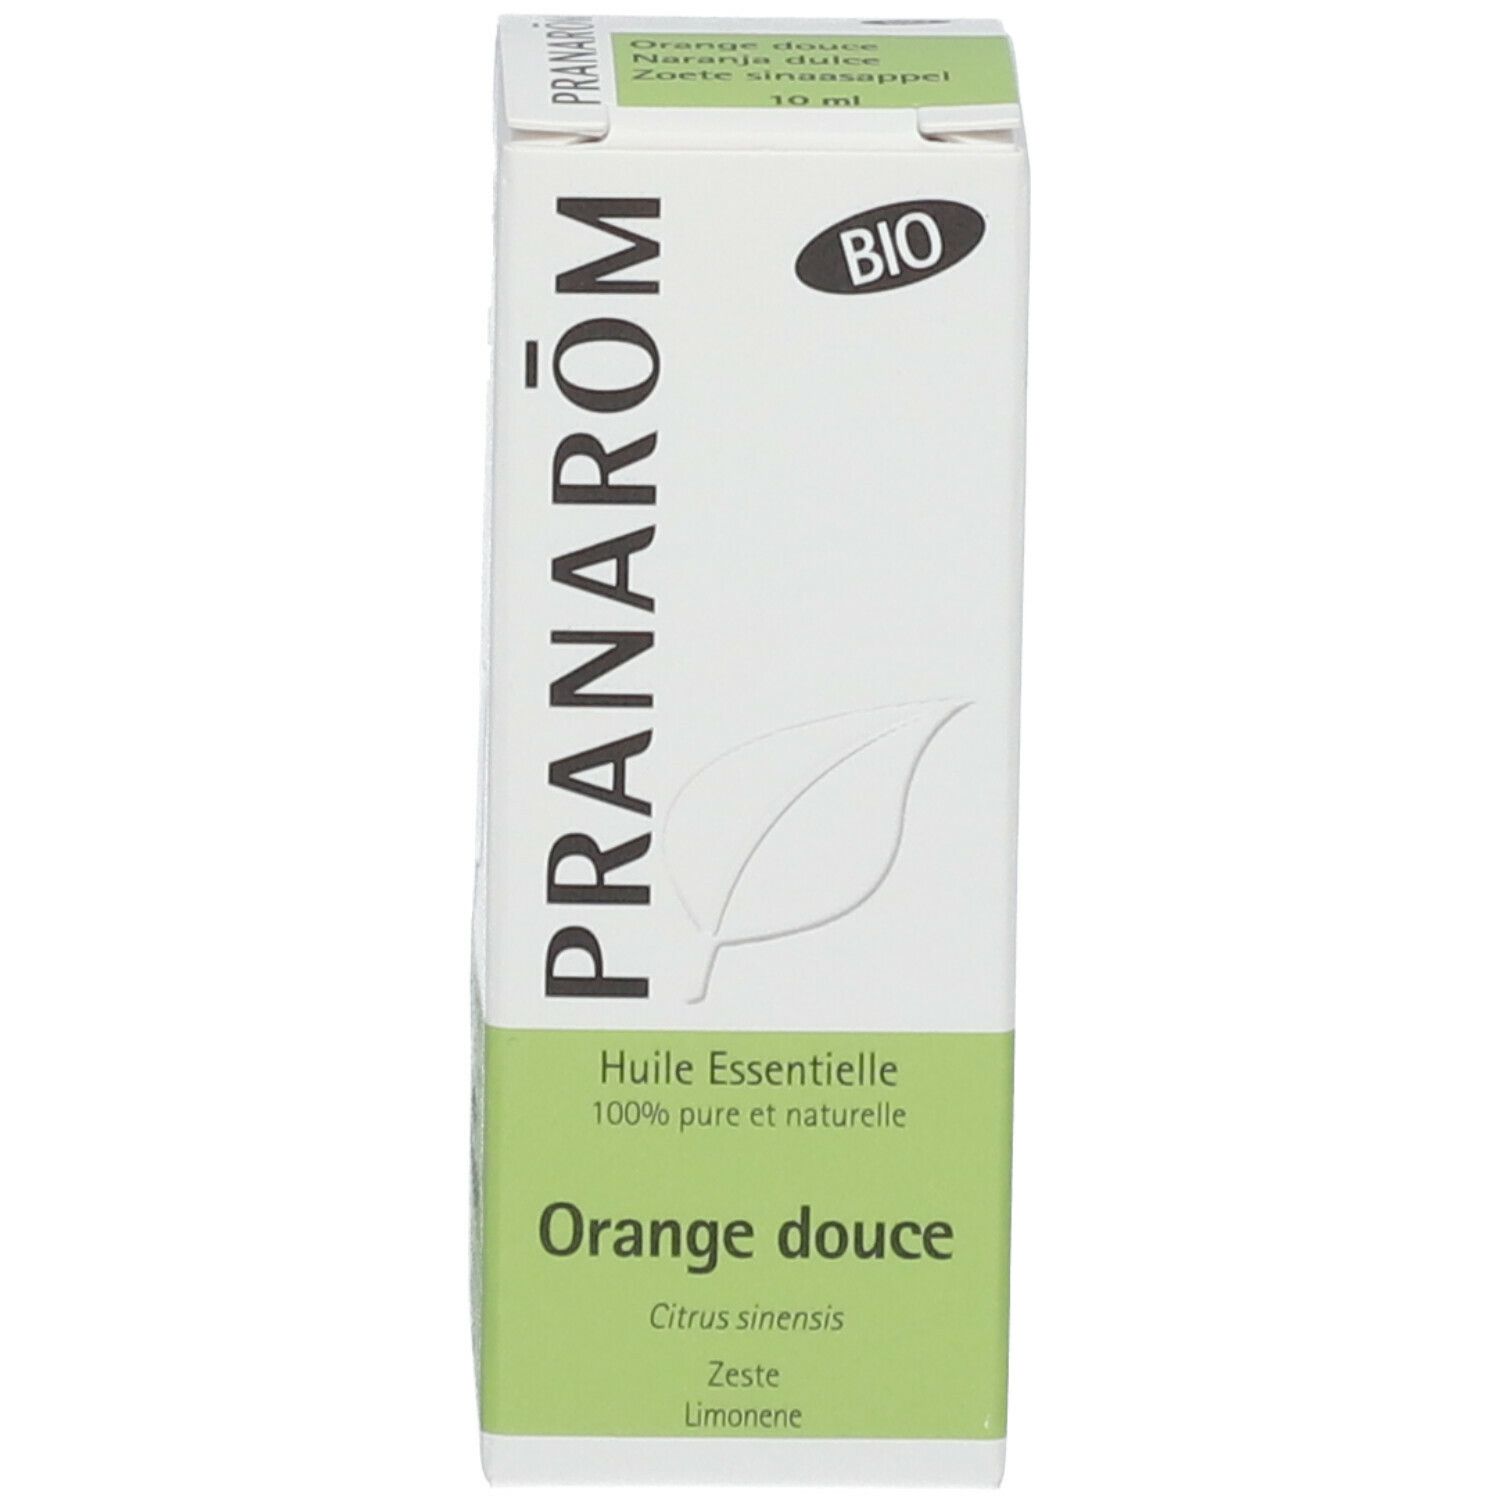 Pranarôm Huile essentielle de zestes d'orange douce bio